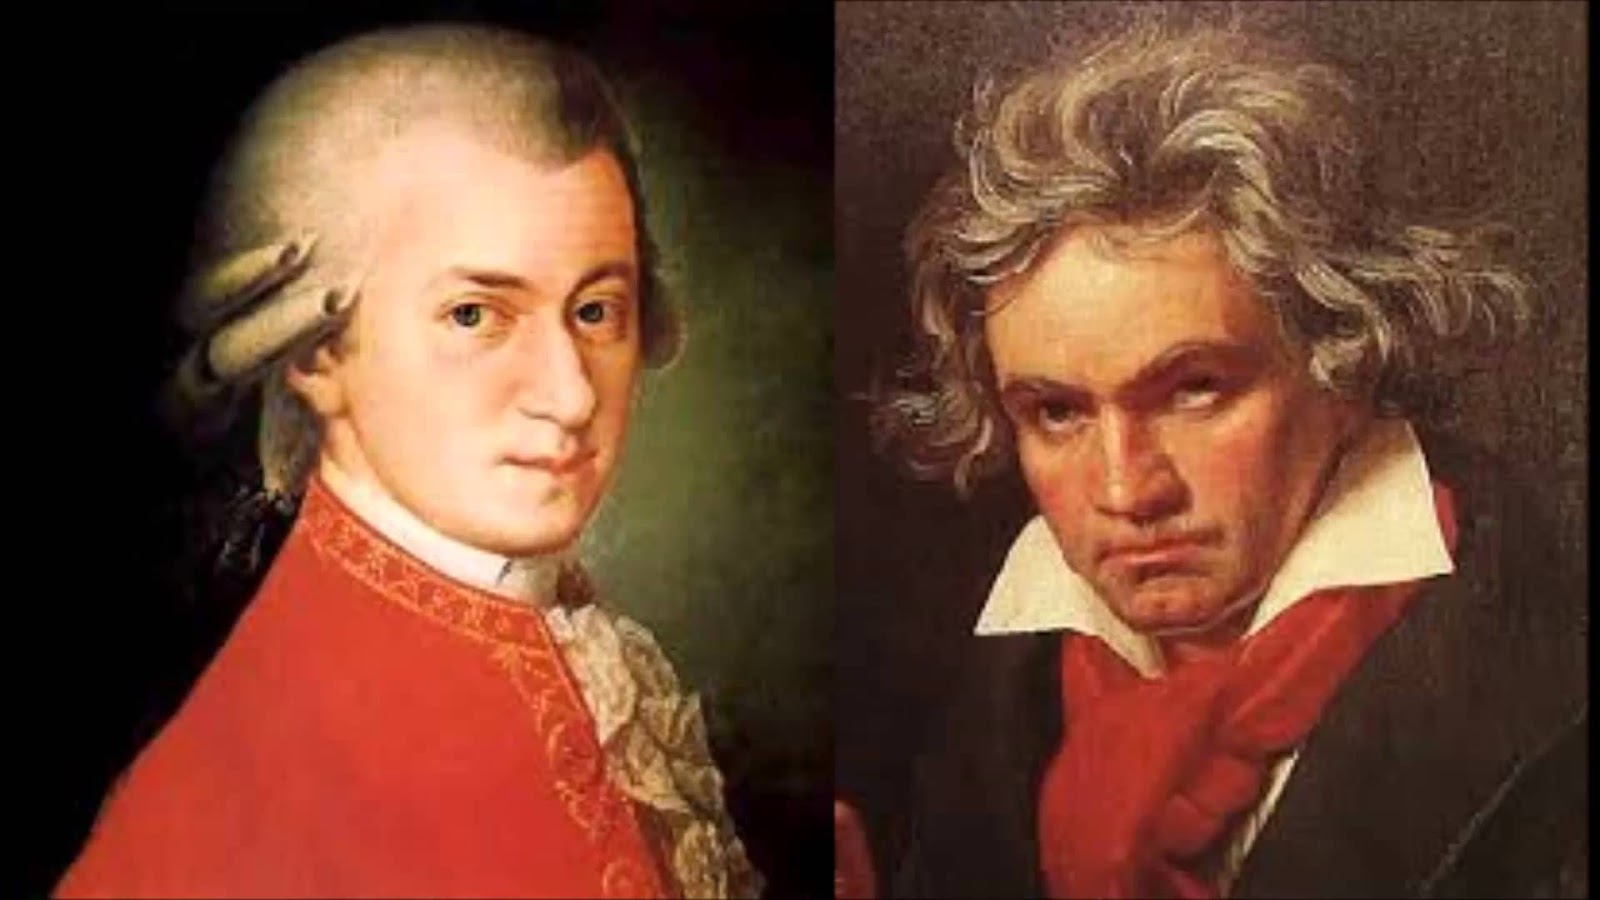 Âm nhạc của Mozart truyền cảm hứng cho nhiều nhà soạn nhạc sau này